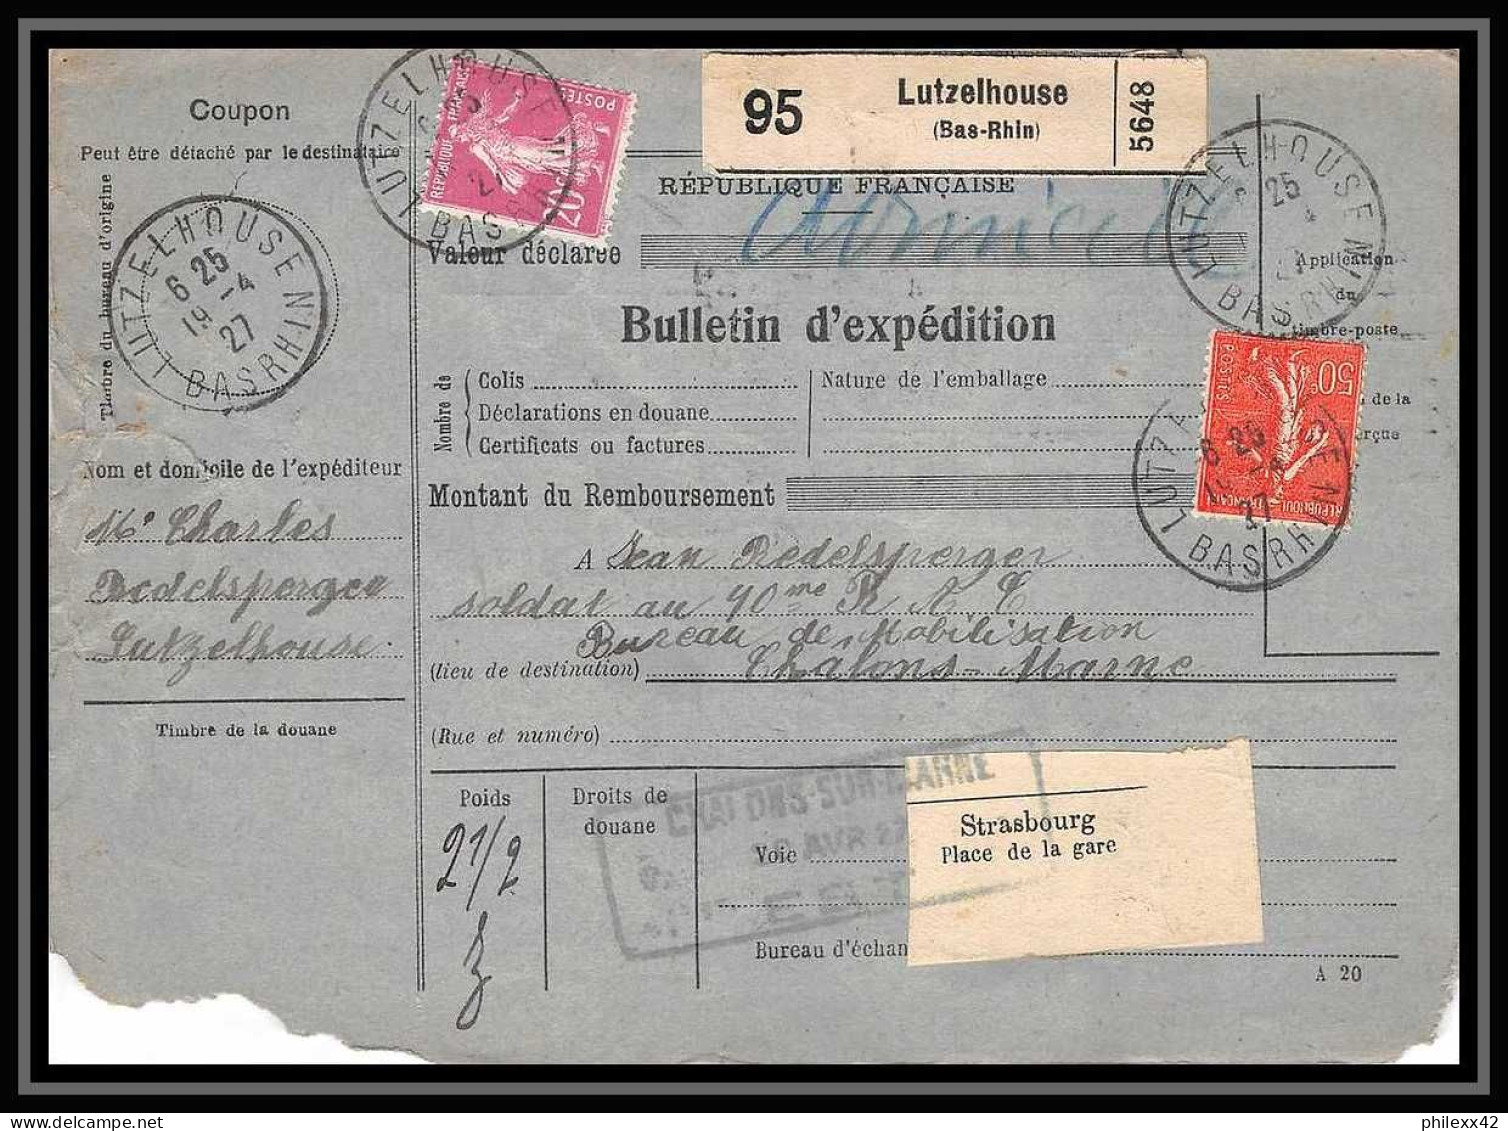 25095 Bulletin D'expédition France Colis Postaux Fiscal Bas Rhin - 1927 Lutzelhouse Merson 145 Alsace-Lorraine  - Briefe U. Dokumente